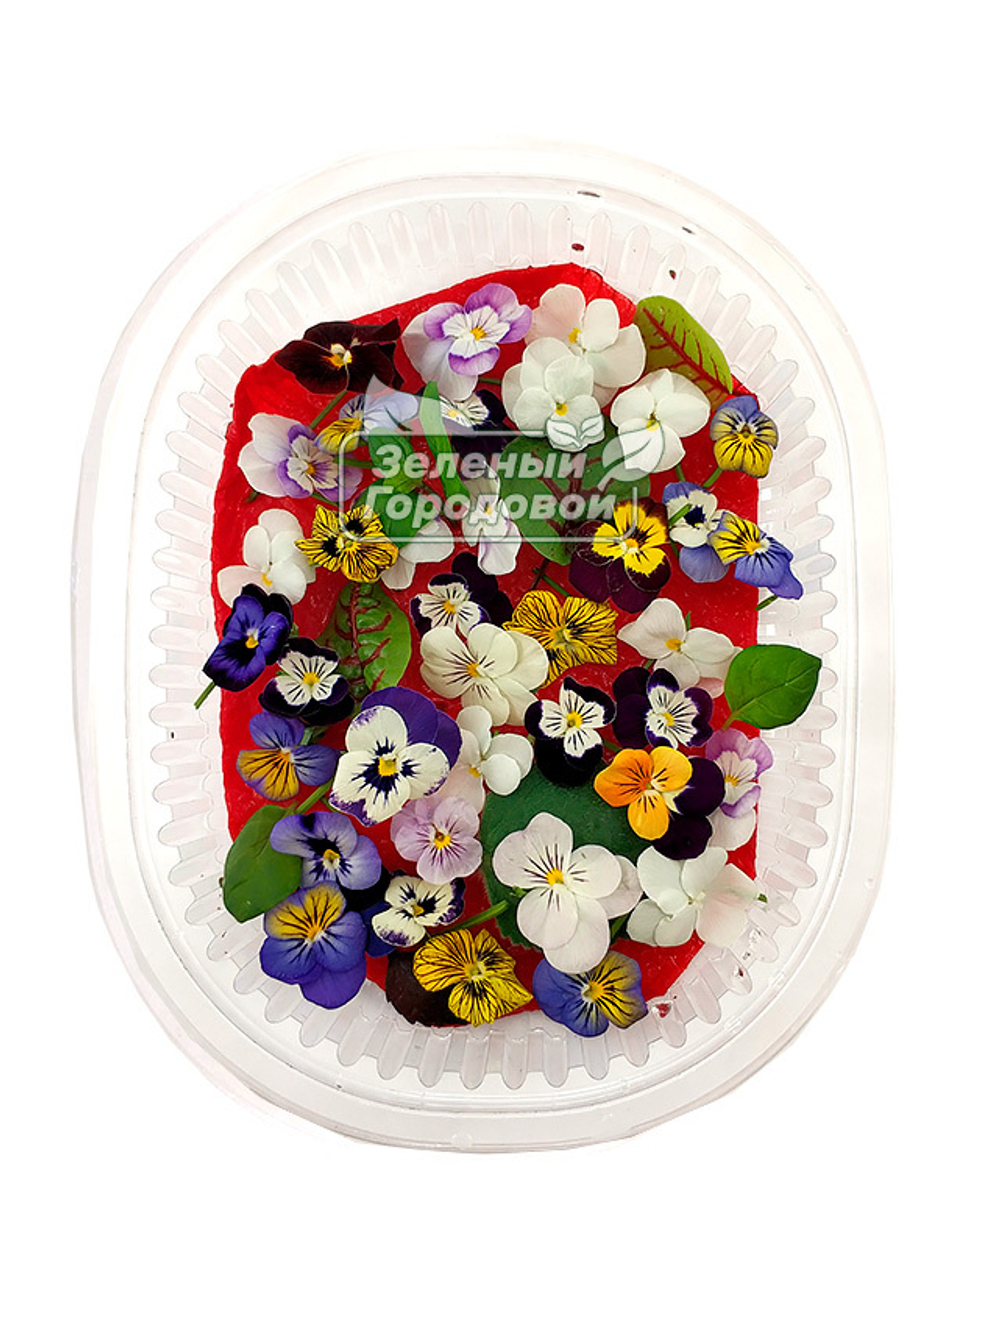 Съедобные цветы микровиолы (фиалки), 35 шт